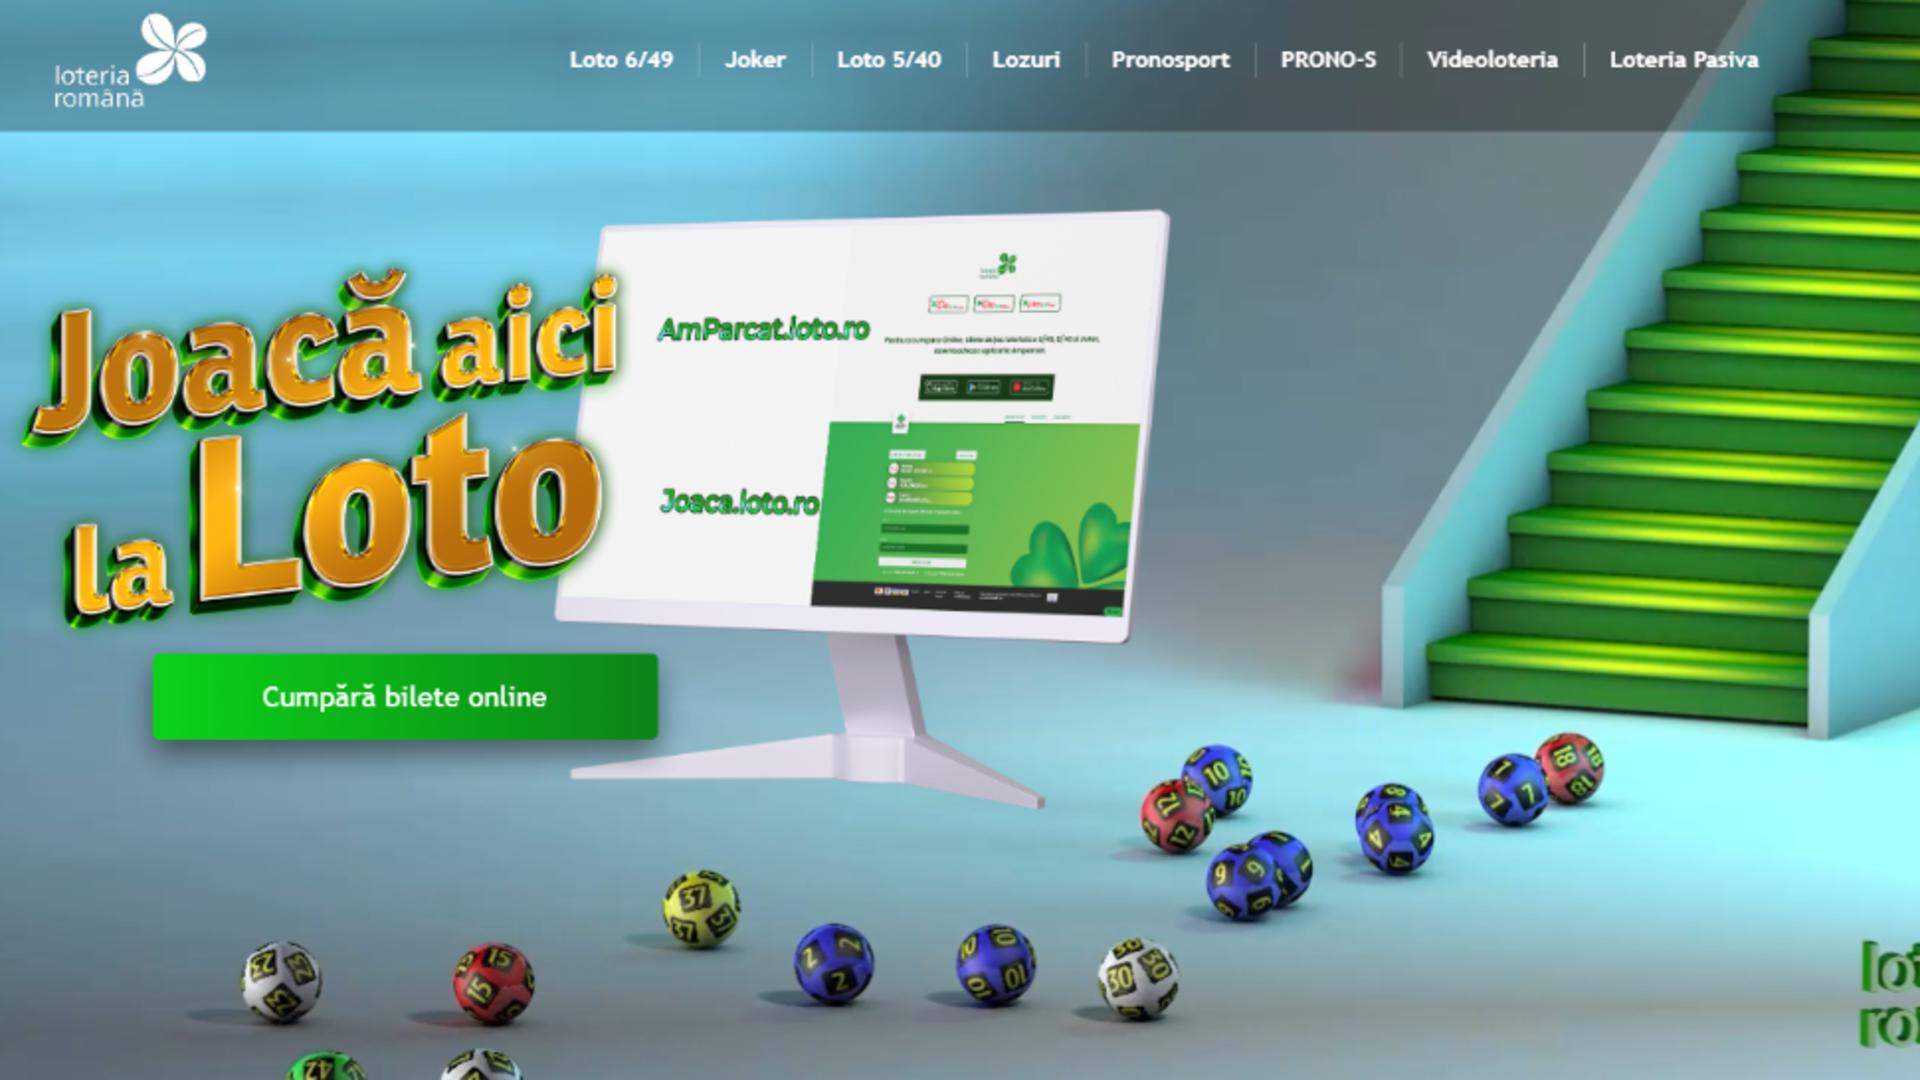 Românii pot de acum să joace la loto pe internet. Foto: Loteria Romana